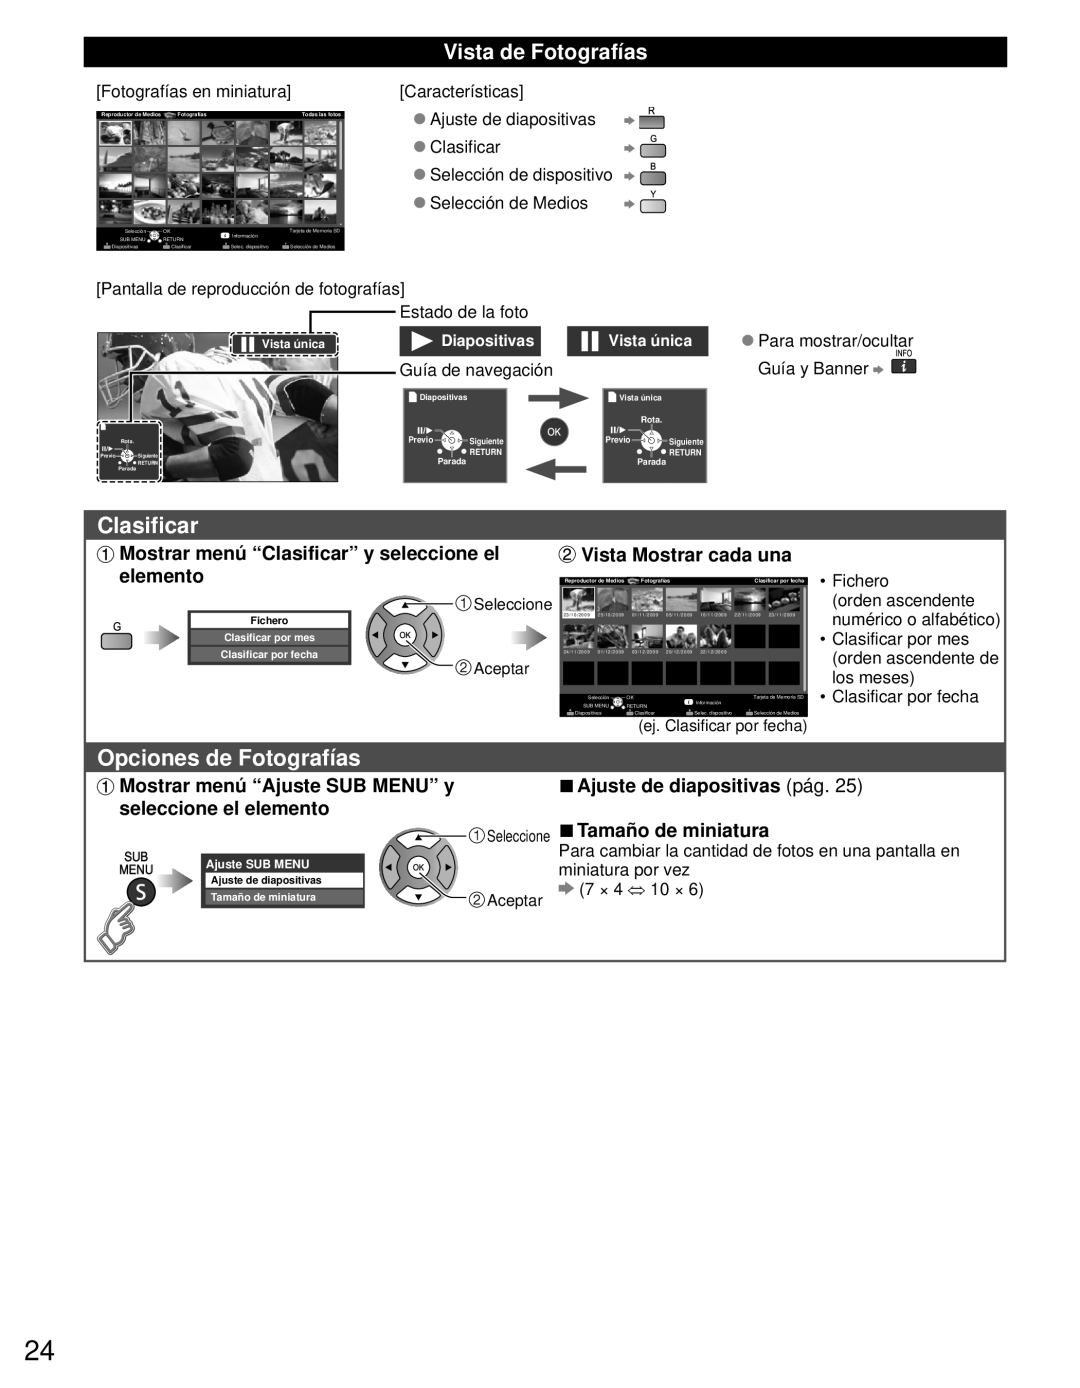 Panasonic TC-L42E3 Opciones de Fotografías, Vista de Fotografías, Mostrar menú “Clasificar” y seleccione el, elemento 